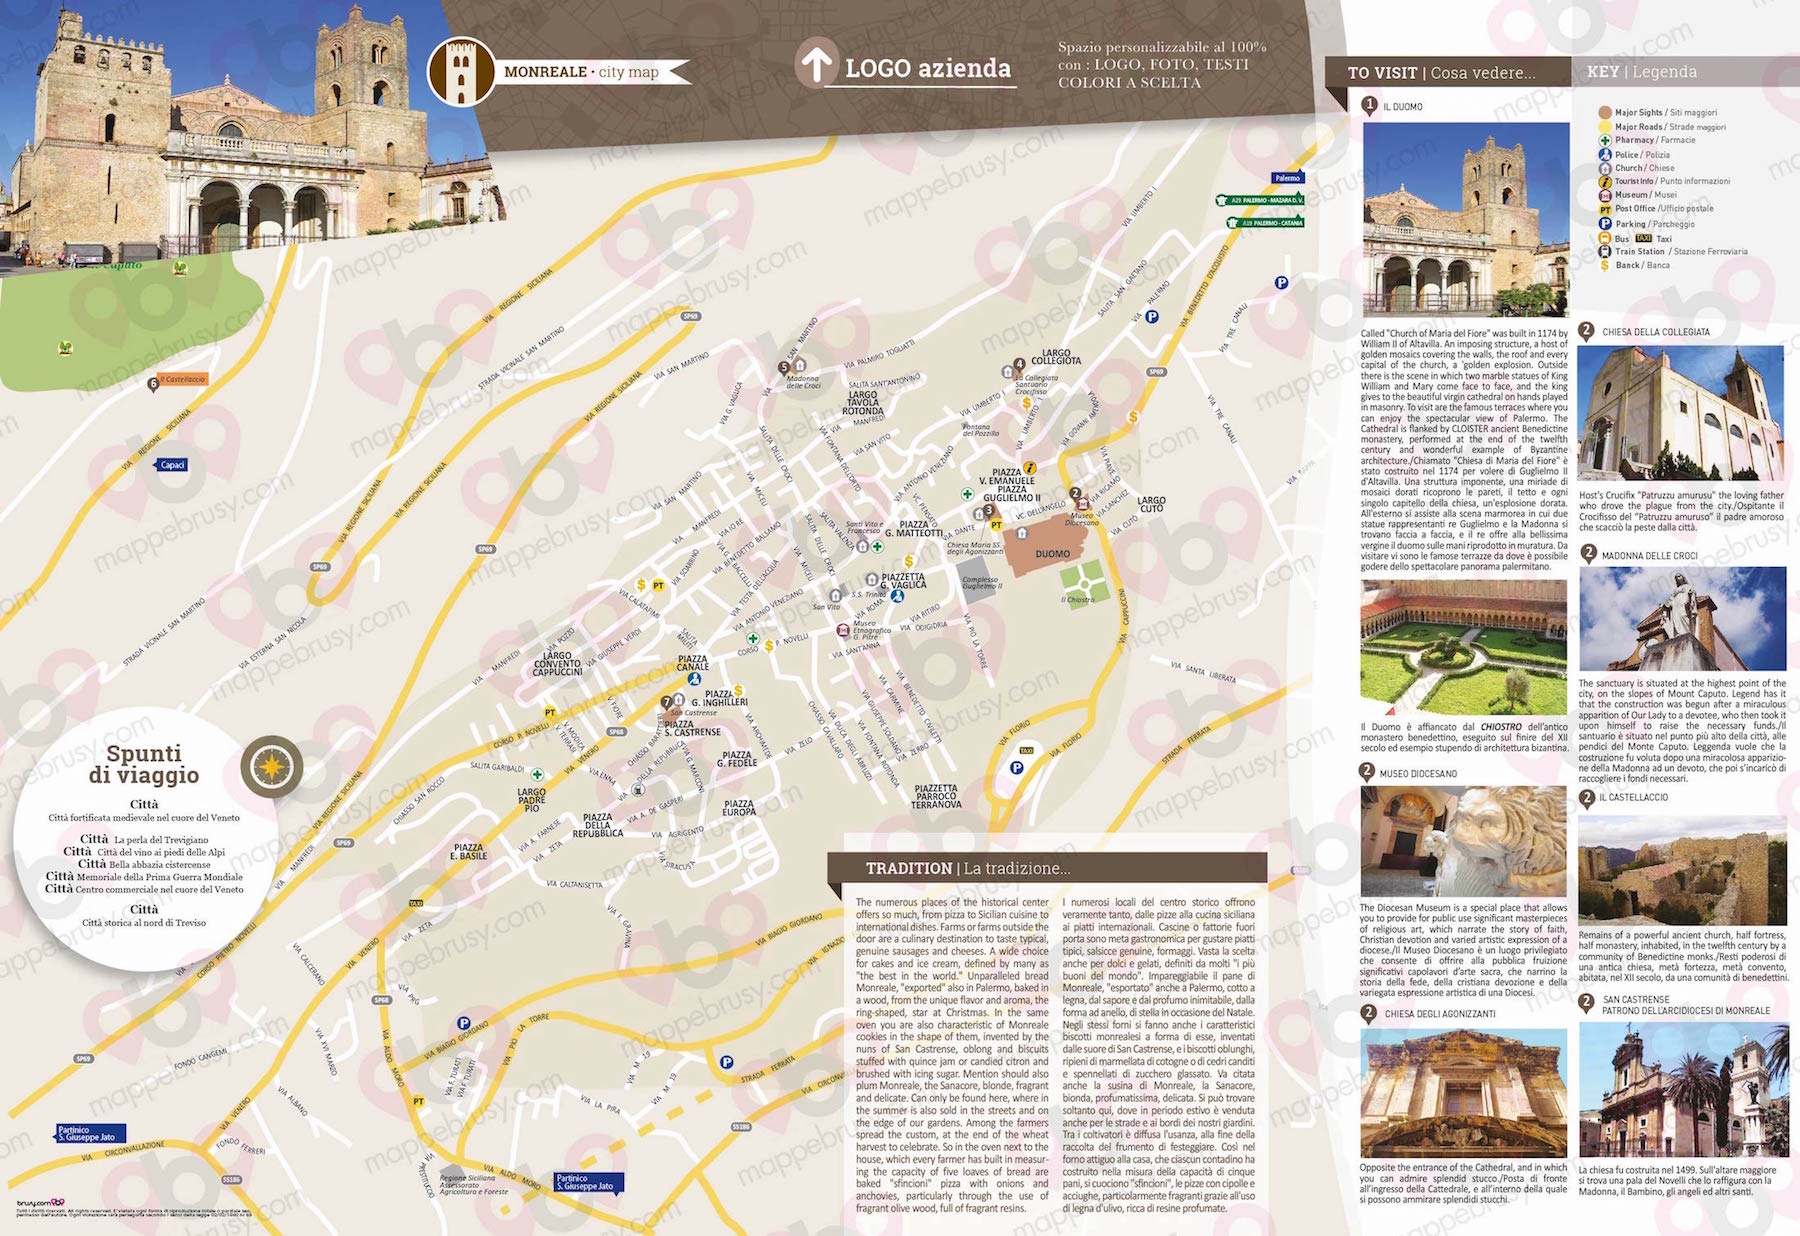 Mappa di Monreale - Monreale city map - mappa Monreale - mappa personalizzata di Monreale - mappa tursitica di Monreale